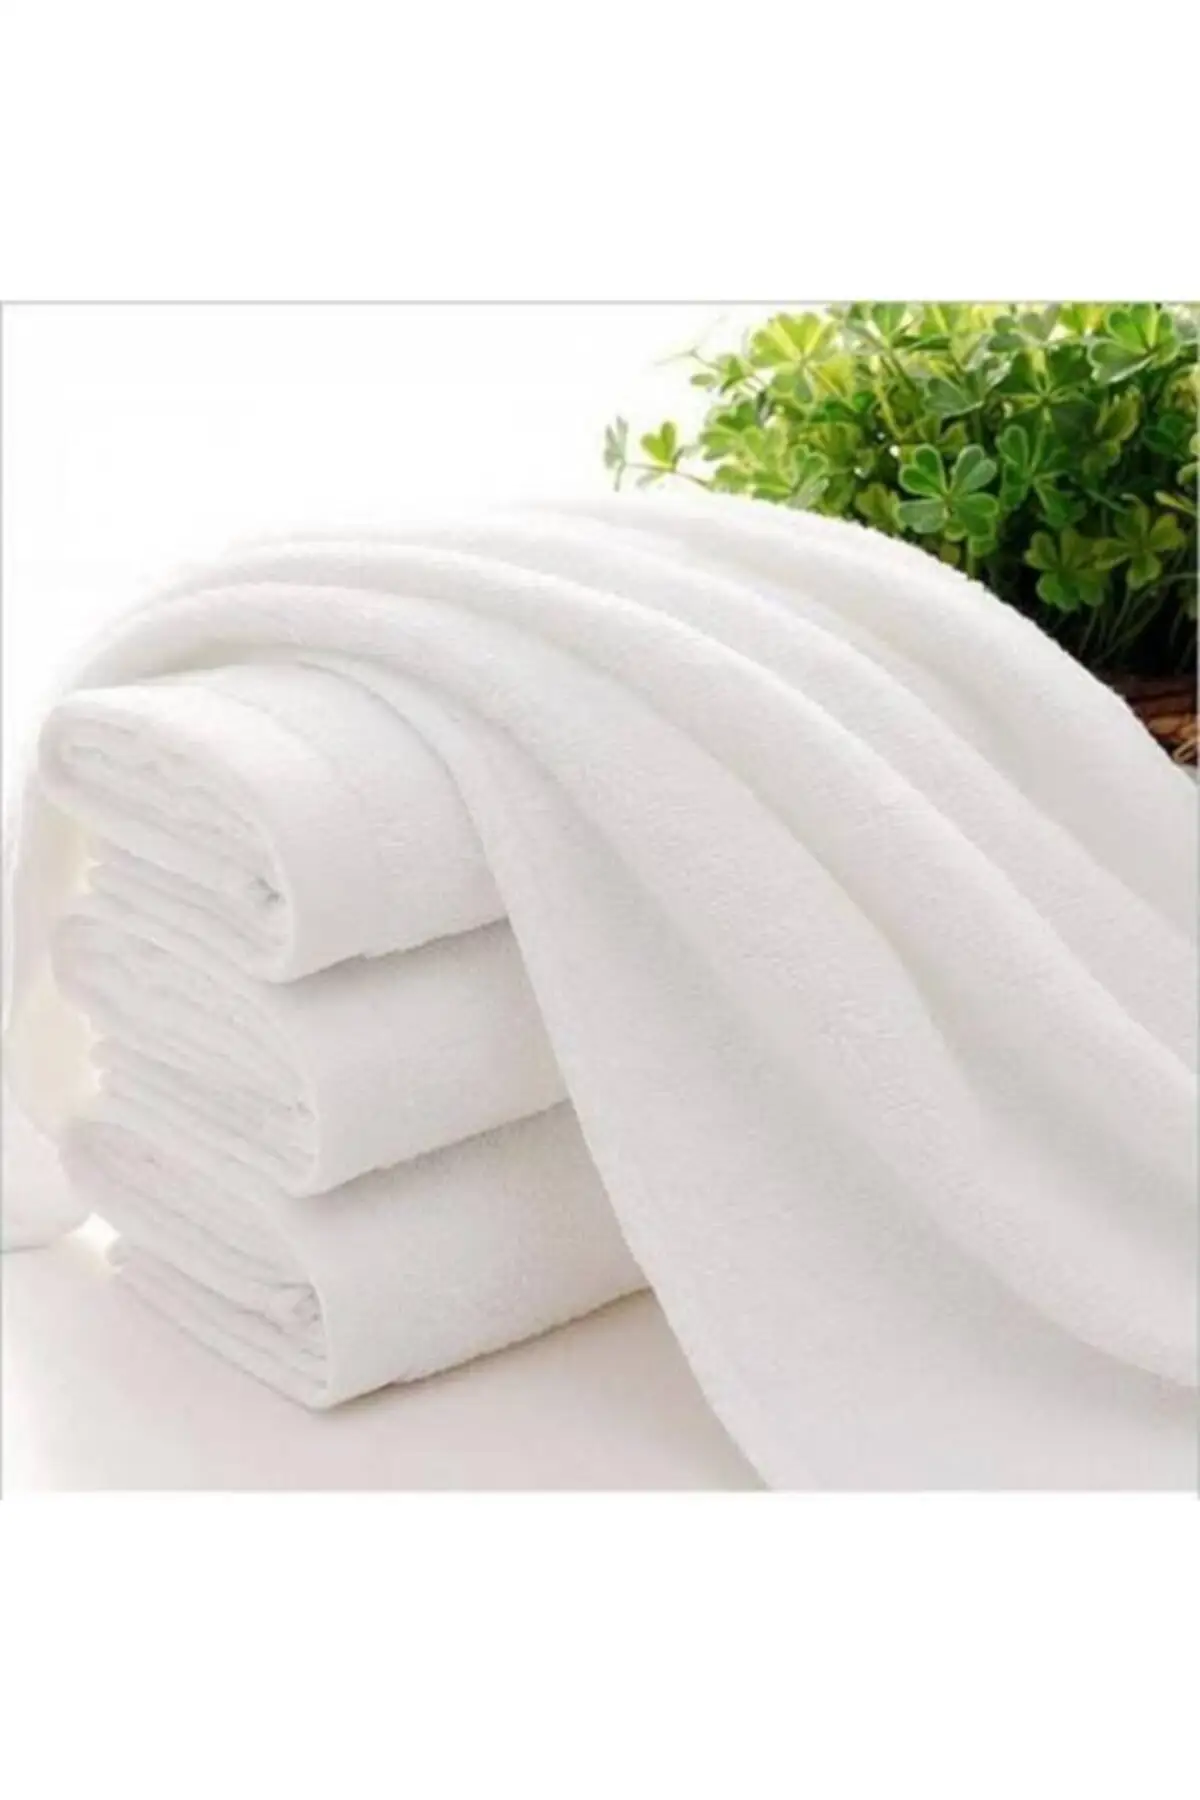 

Банное полотенце, чистый мягкий 5 шт., для отелей и банных полотенец s 70x140 см